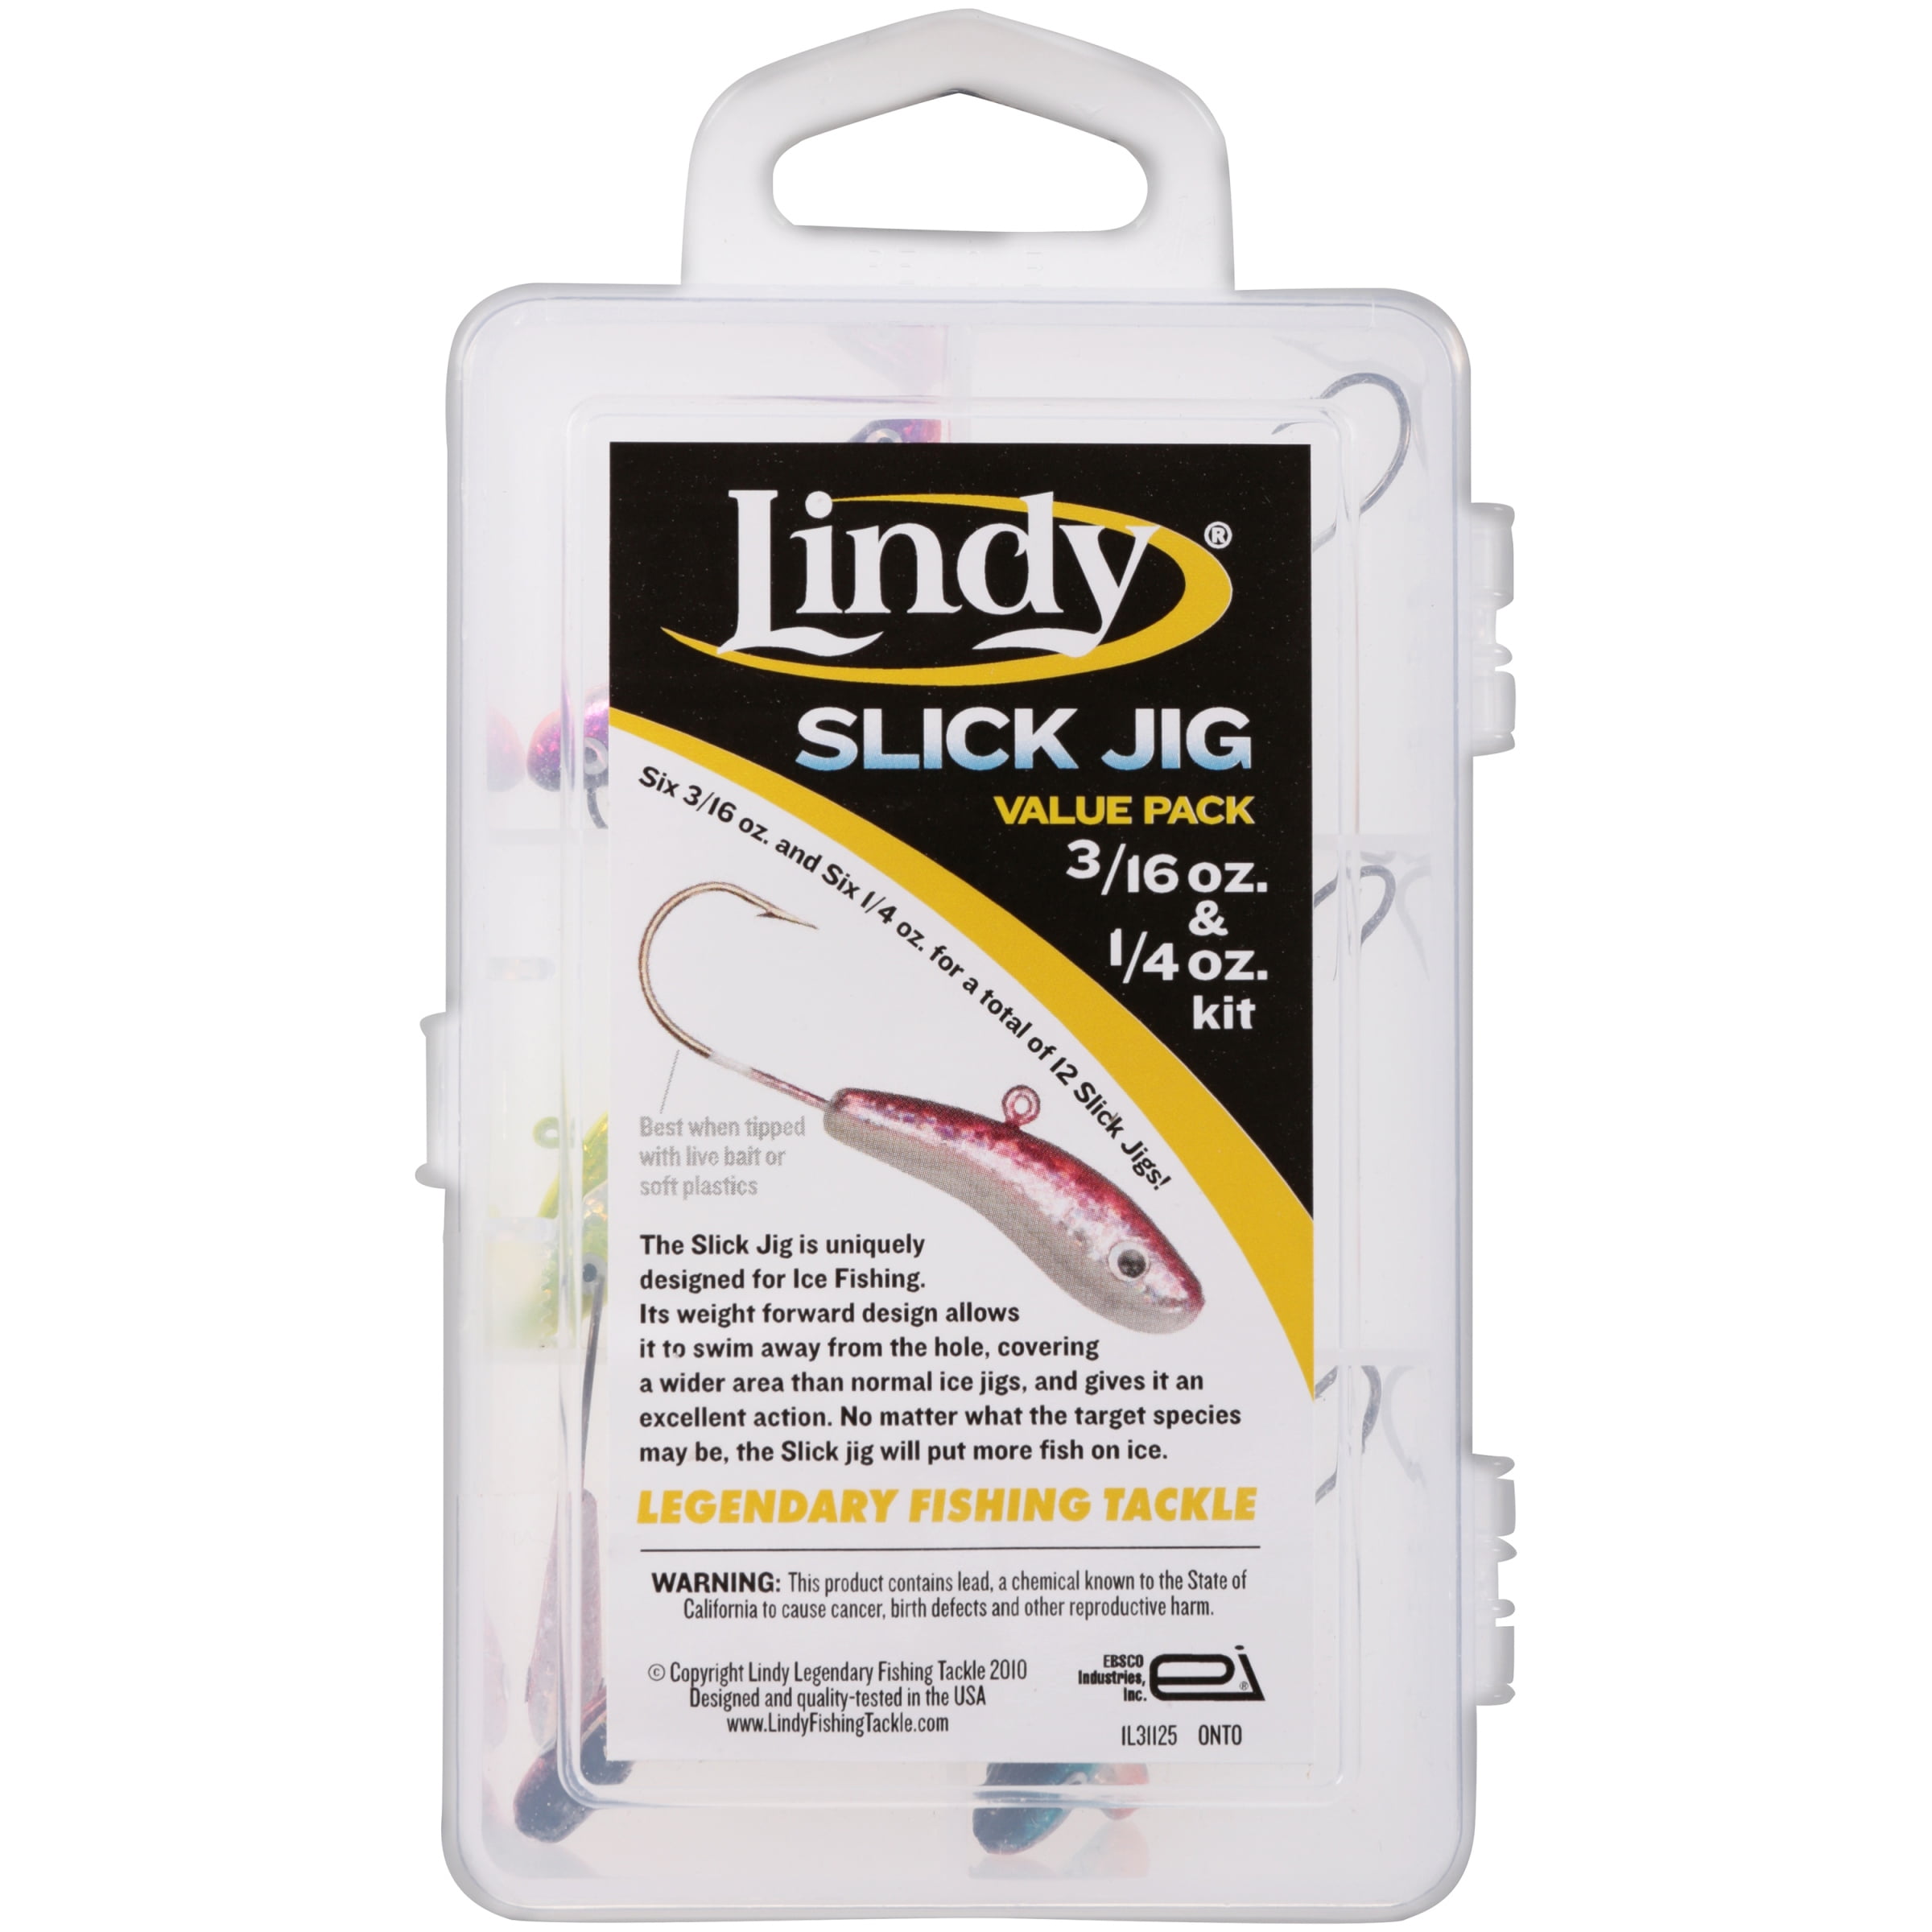 Buy Lindy Slick Jig Kit - 3/16 & 1/4 oz. - 12 pc. Online at